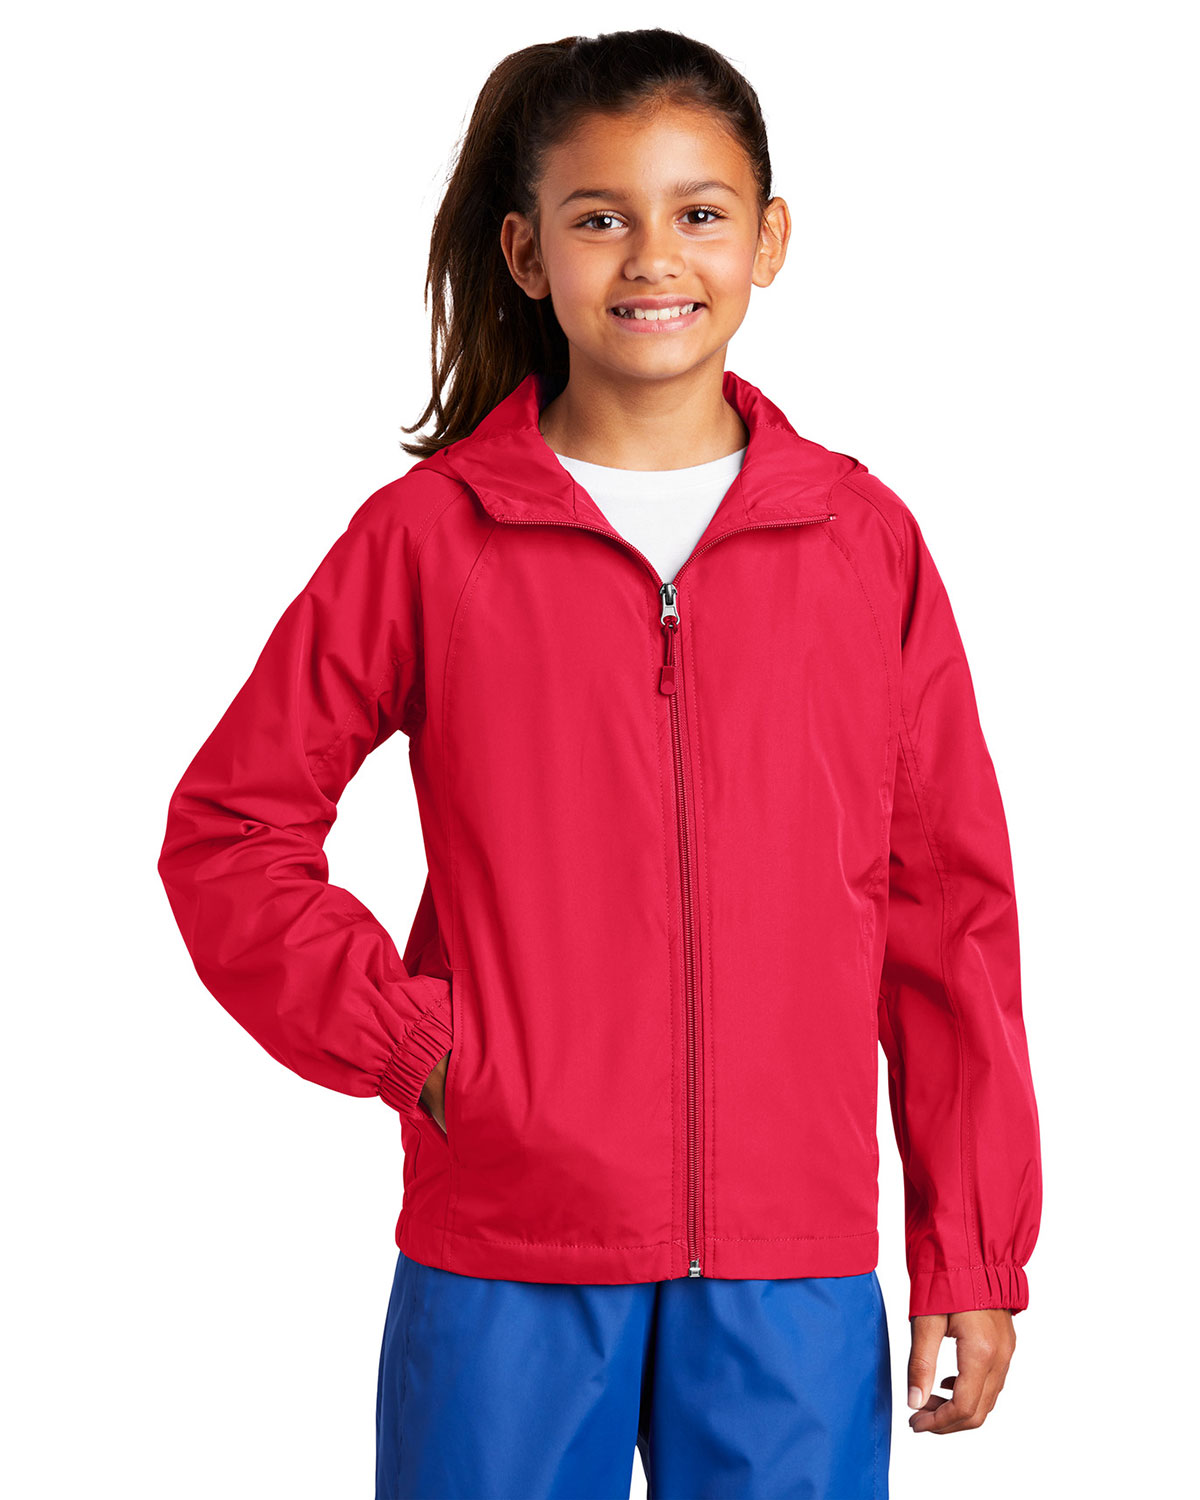 Sport-Tek® YST73 Girls Hooded Raglan Jacket at Apparelstation